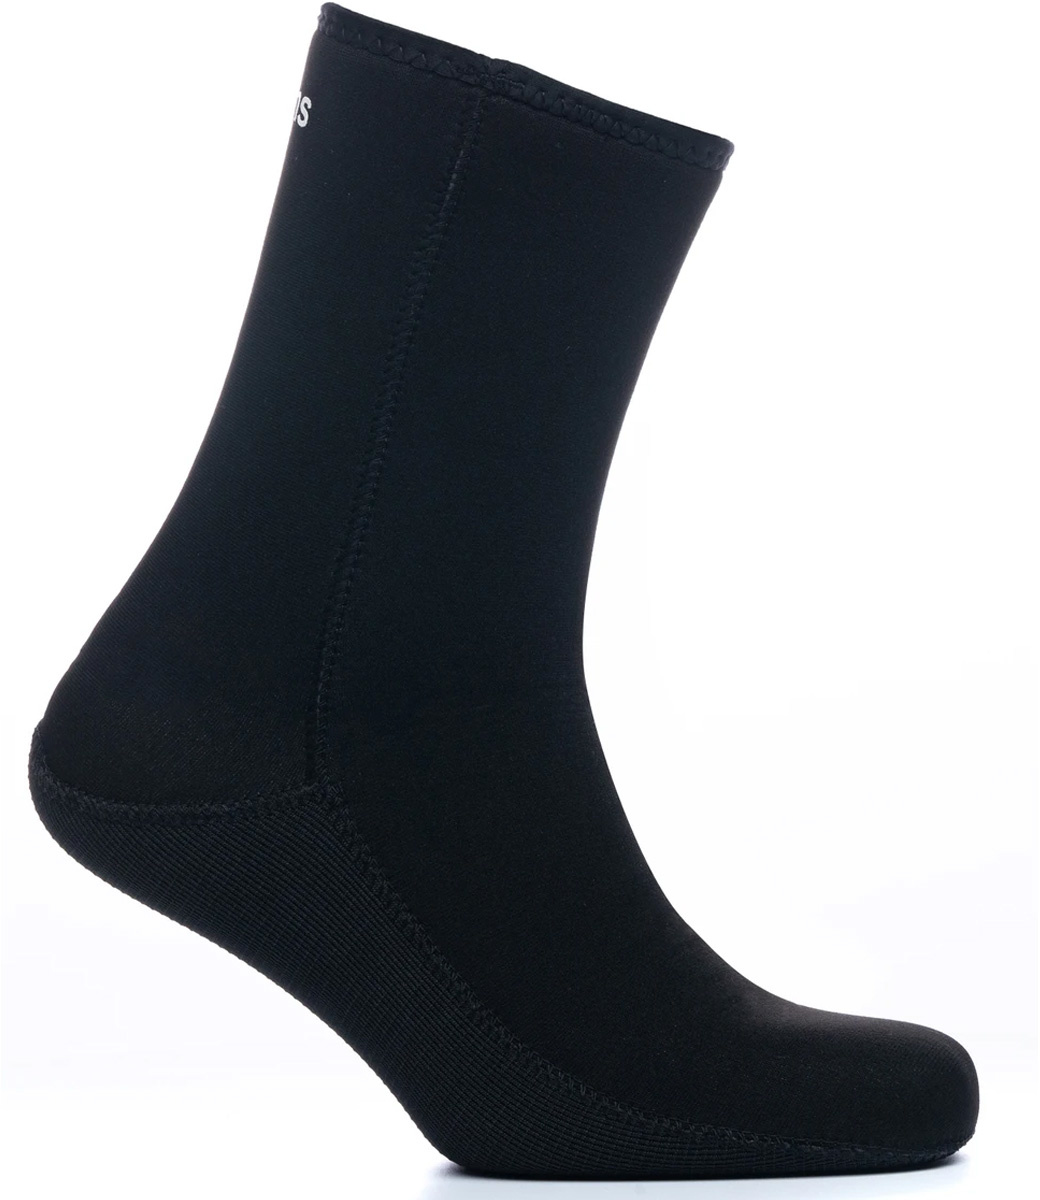 Legend 4mm Thermal Socks - West-Site Boardshop Gent